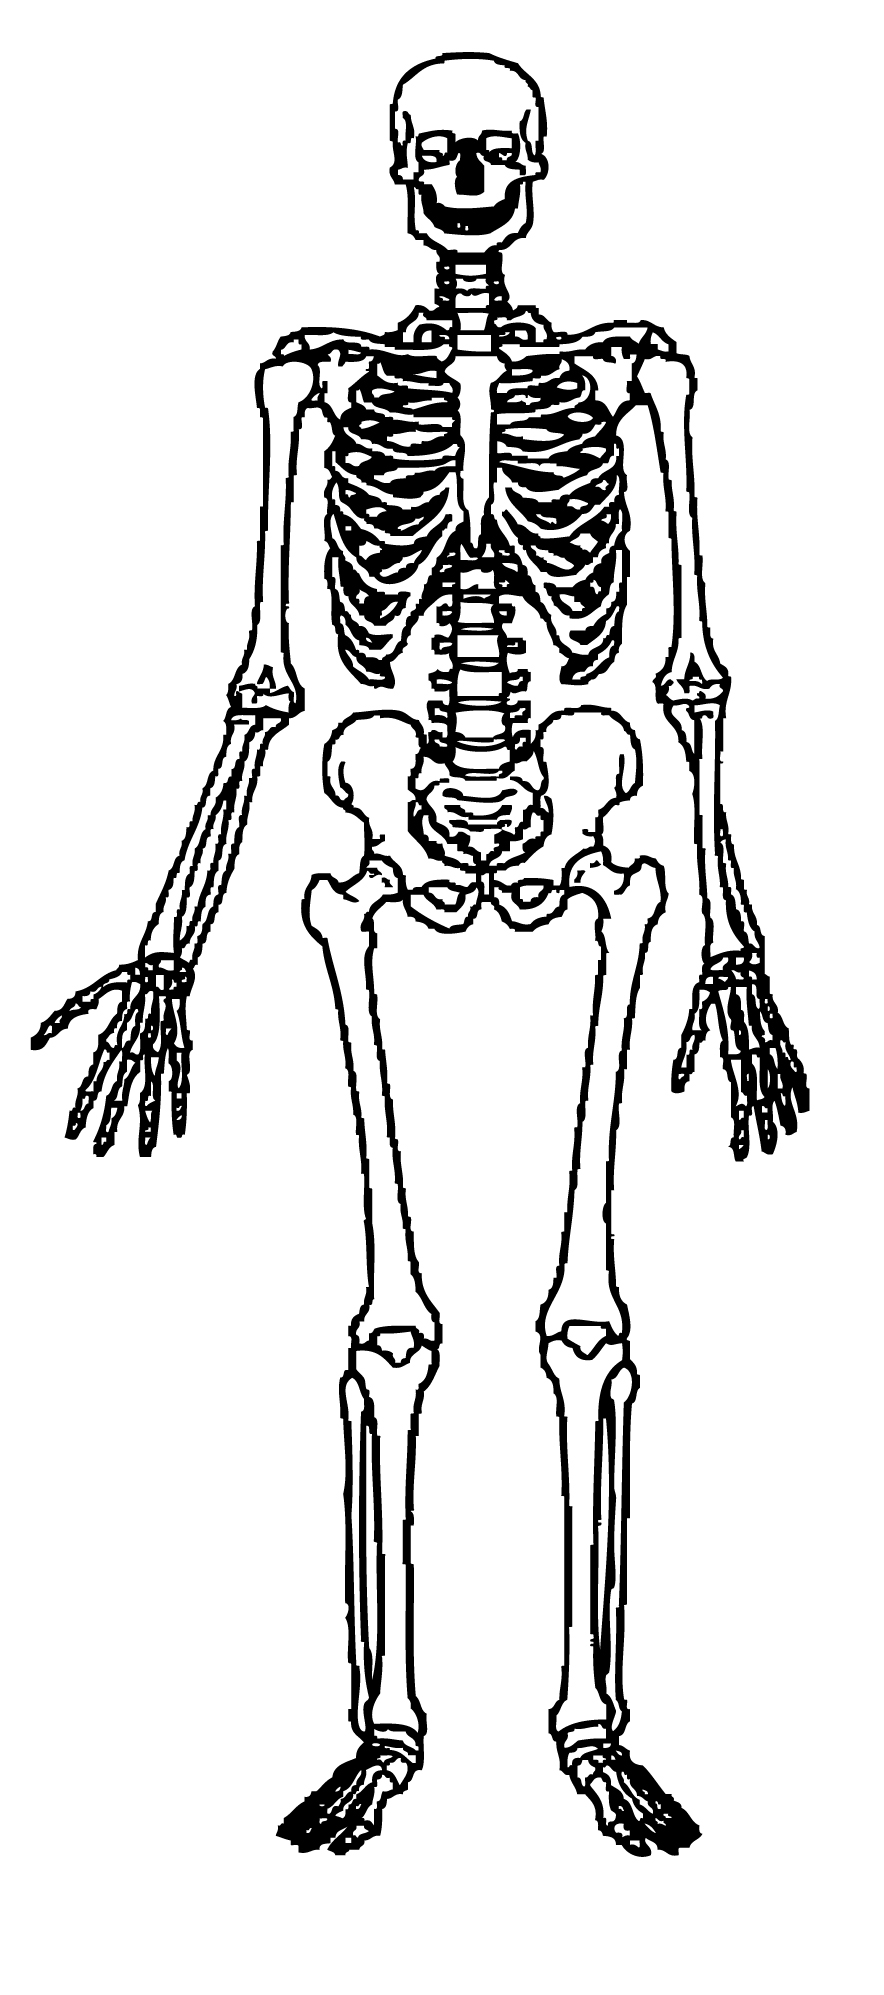 Skeleton images clip art - Cl